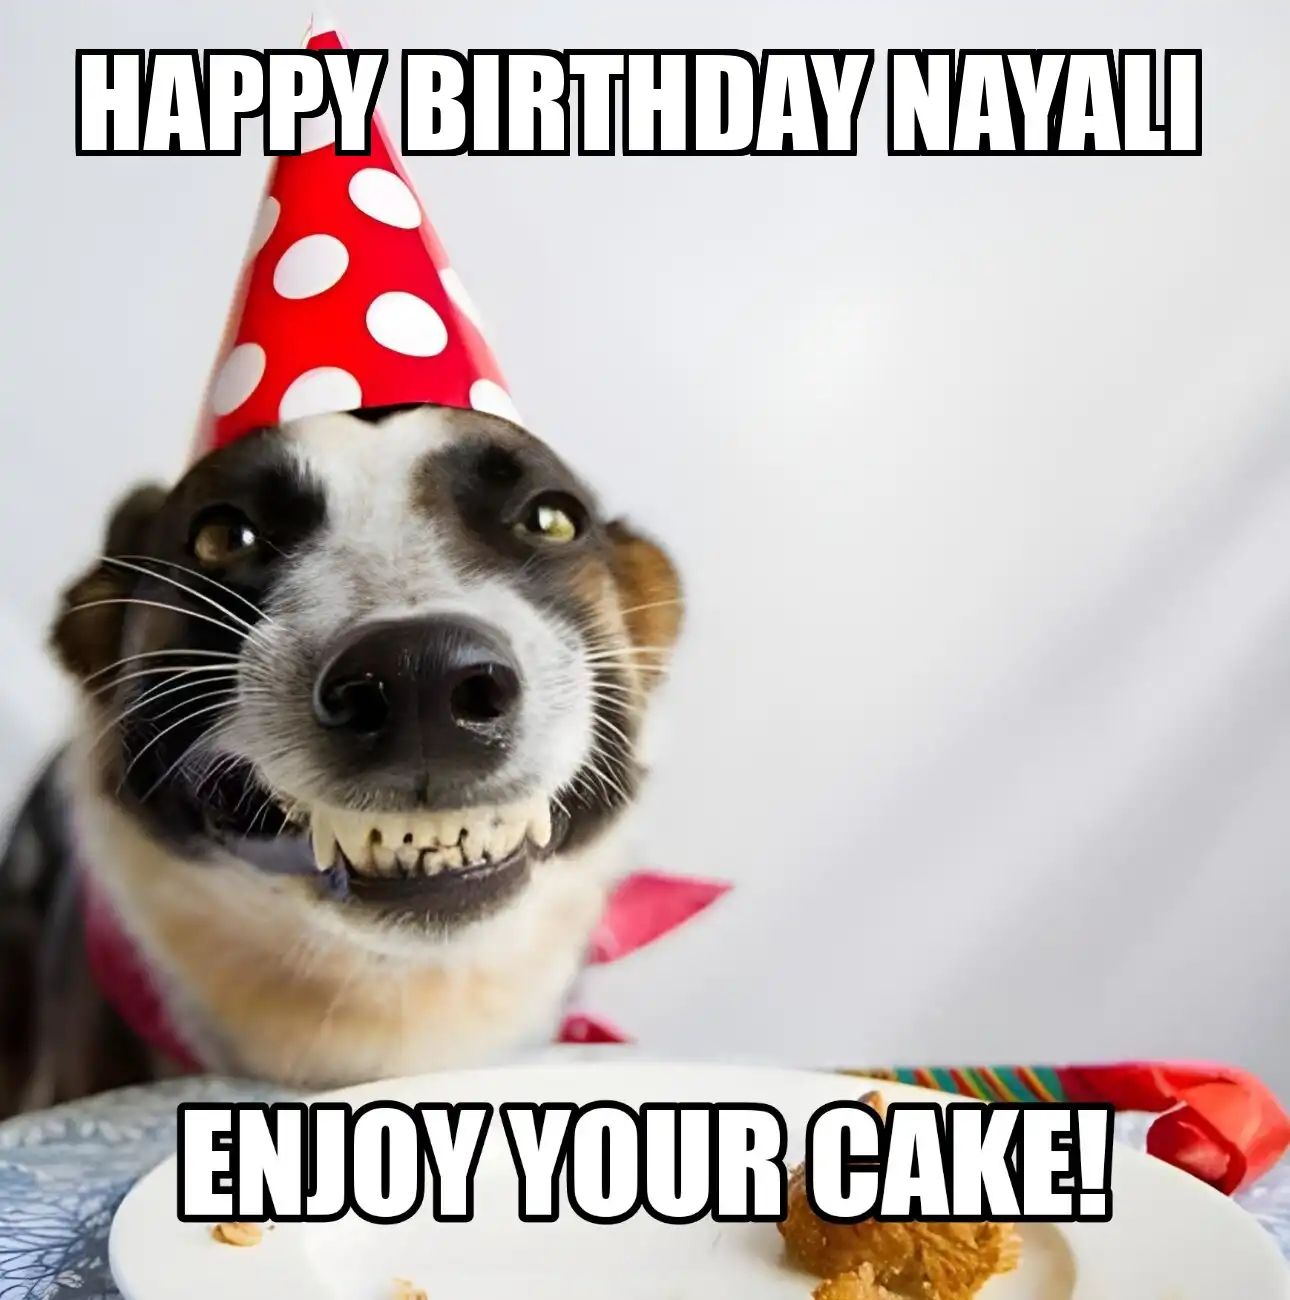 Happy Birthday Nayali Enjoy Your Cake Dog Meme